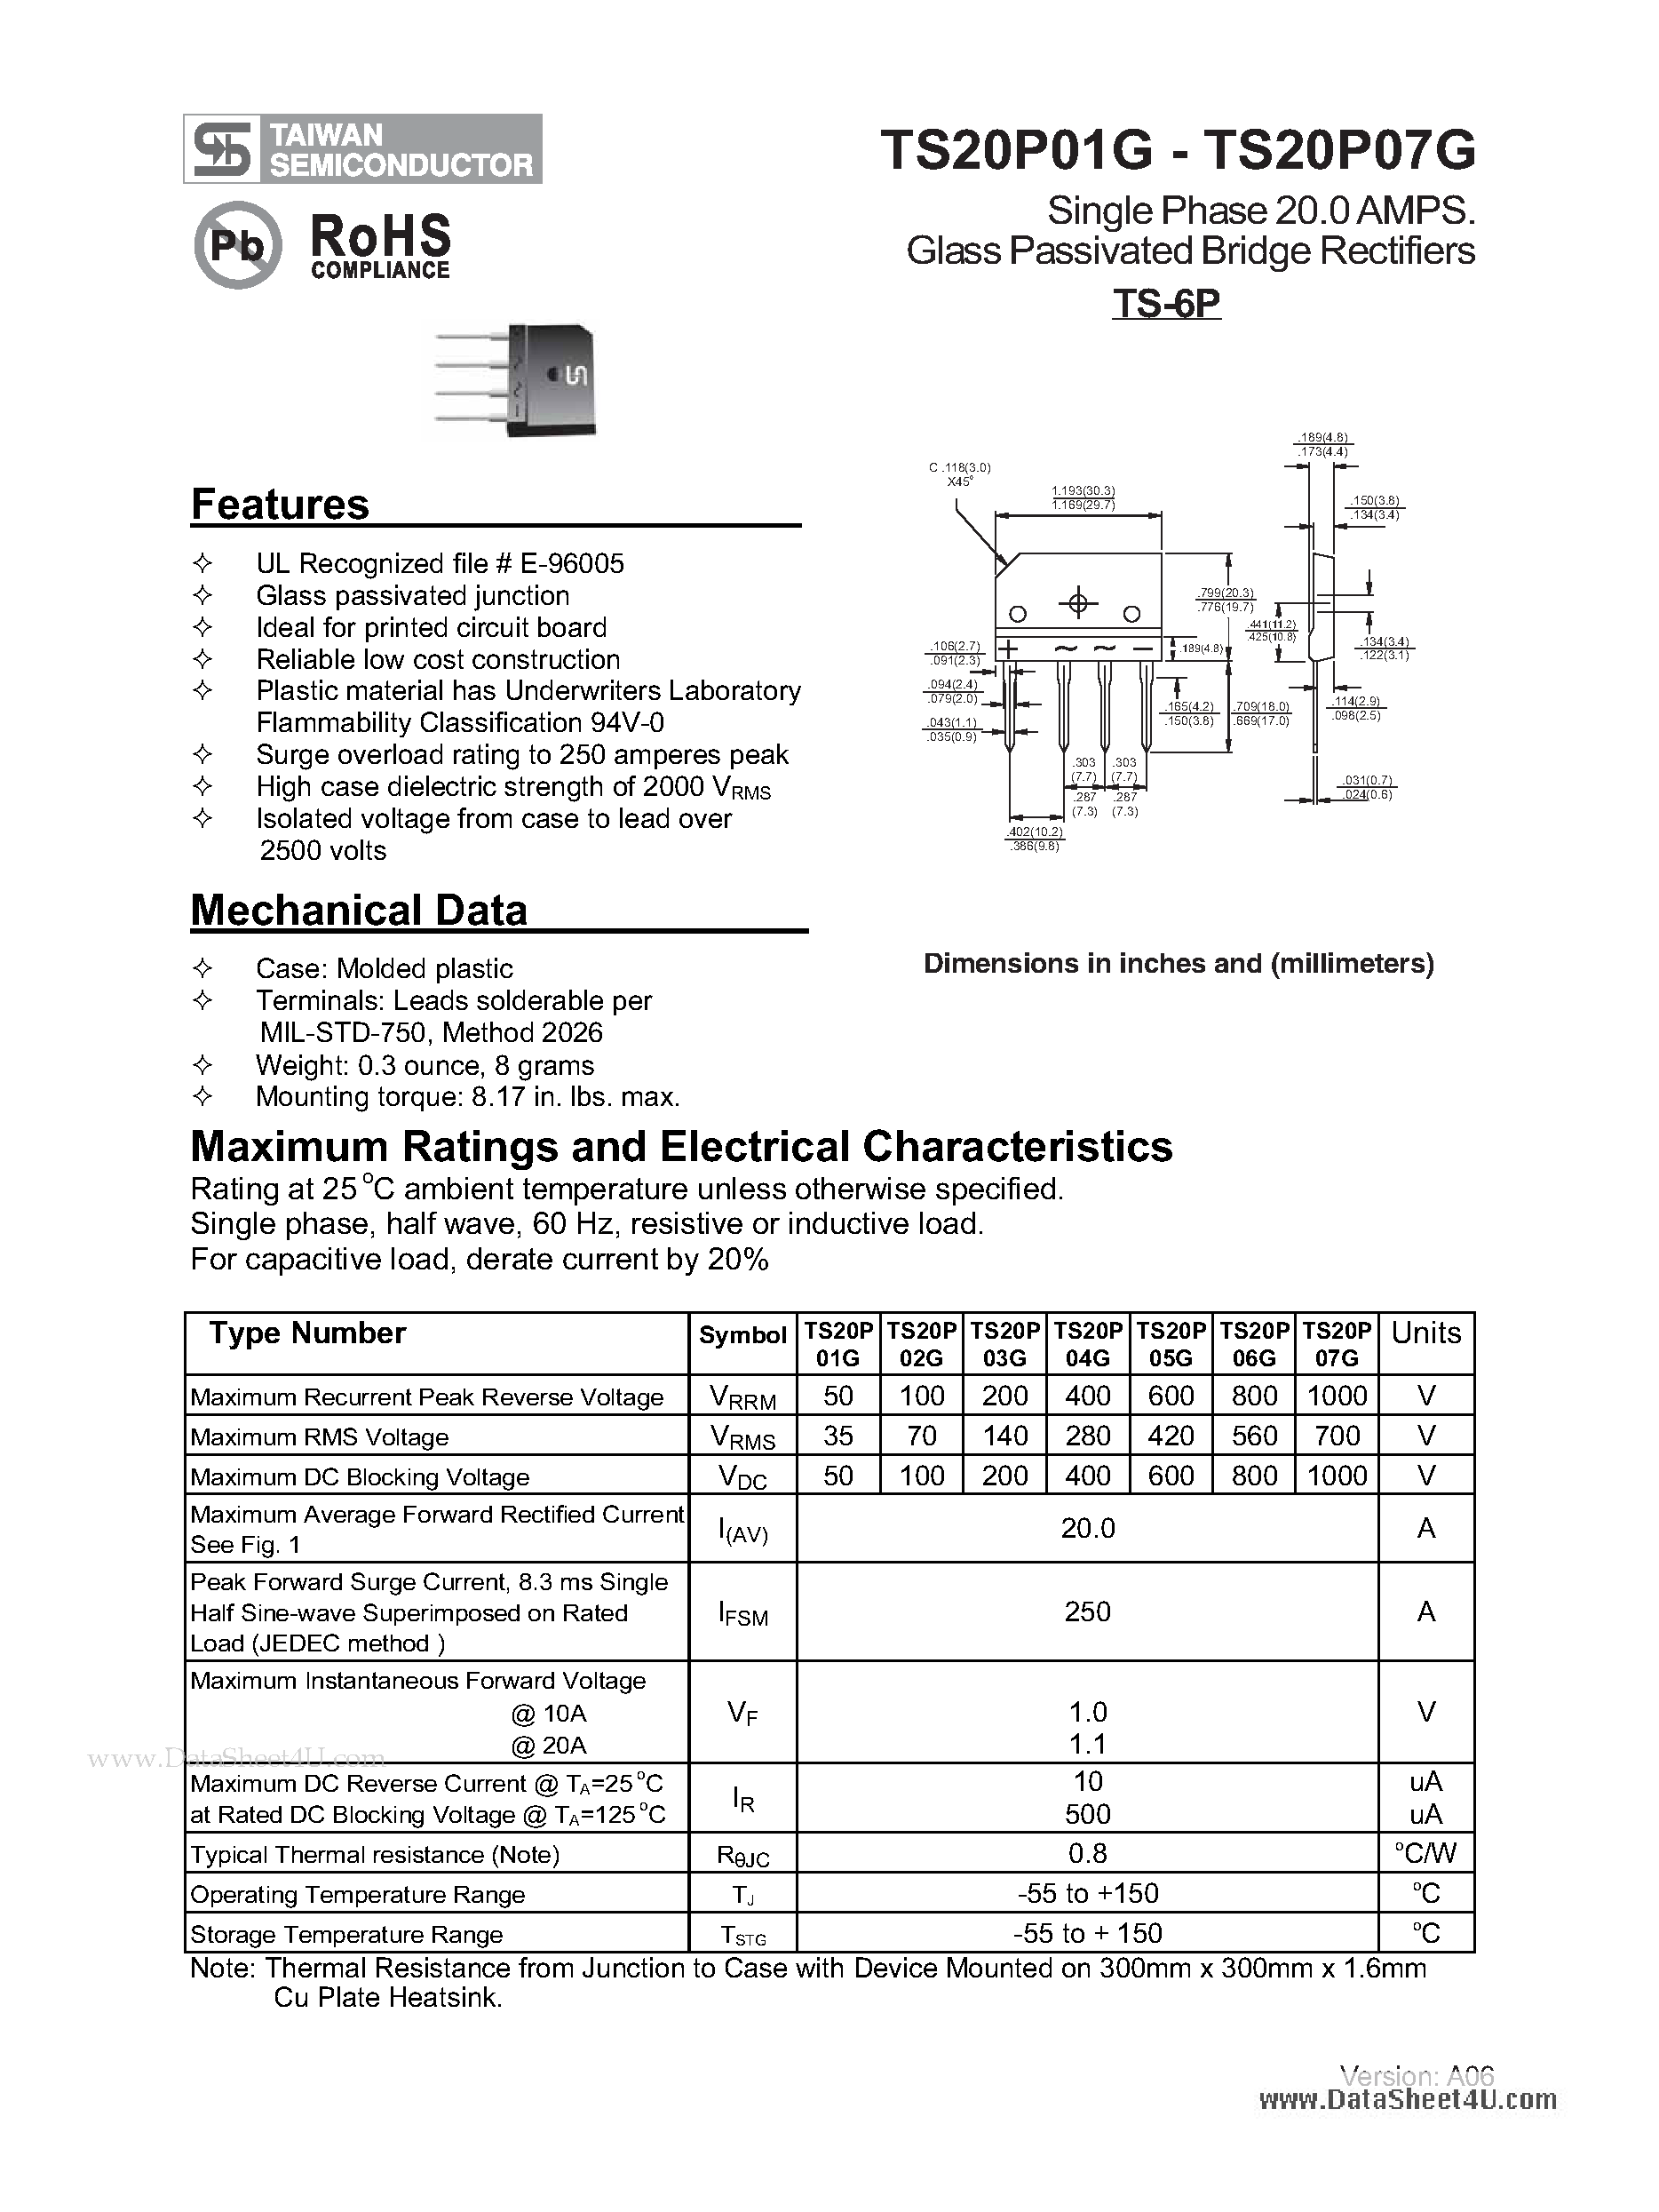 Даташит TS20P01G - (TS20P01G - TS20P07G) Glass Passivated Bridge Rectifiers страница 1